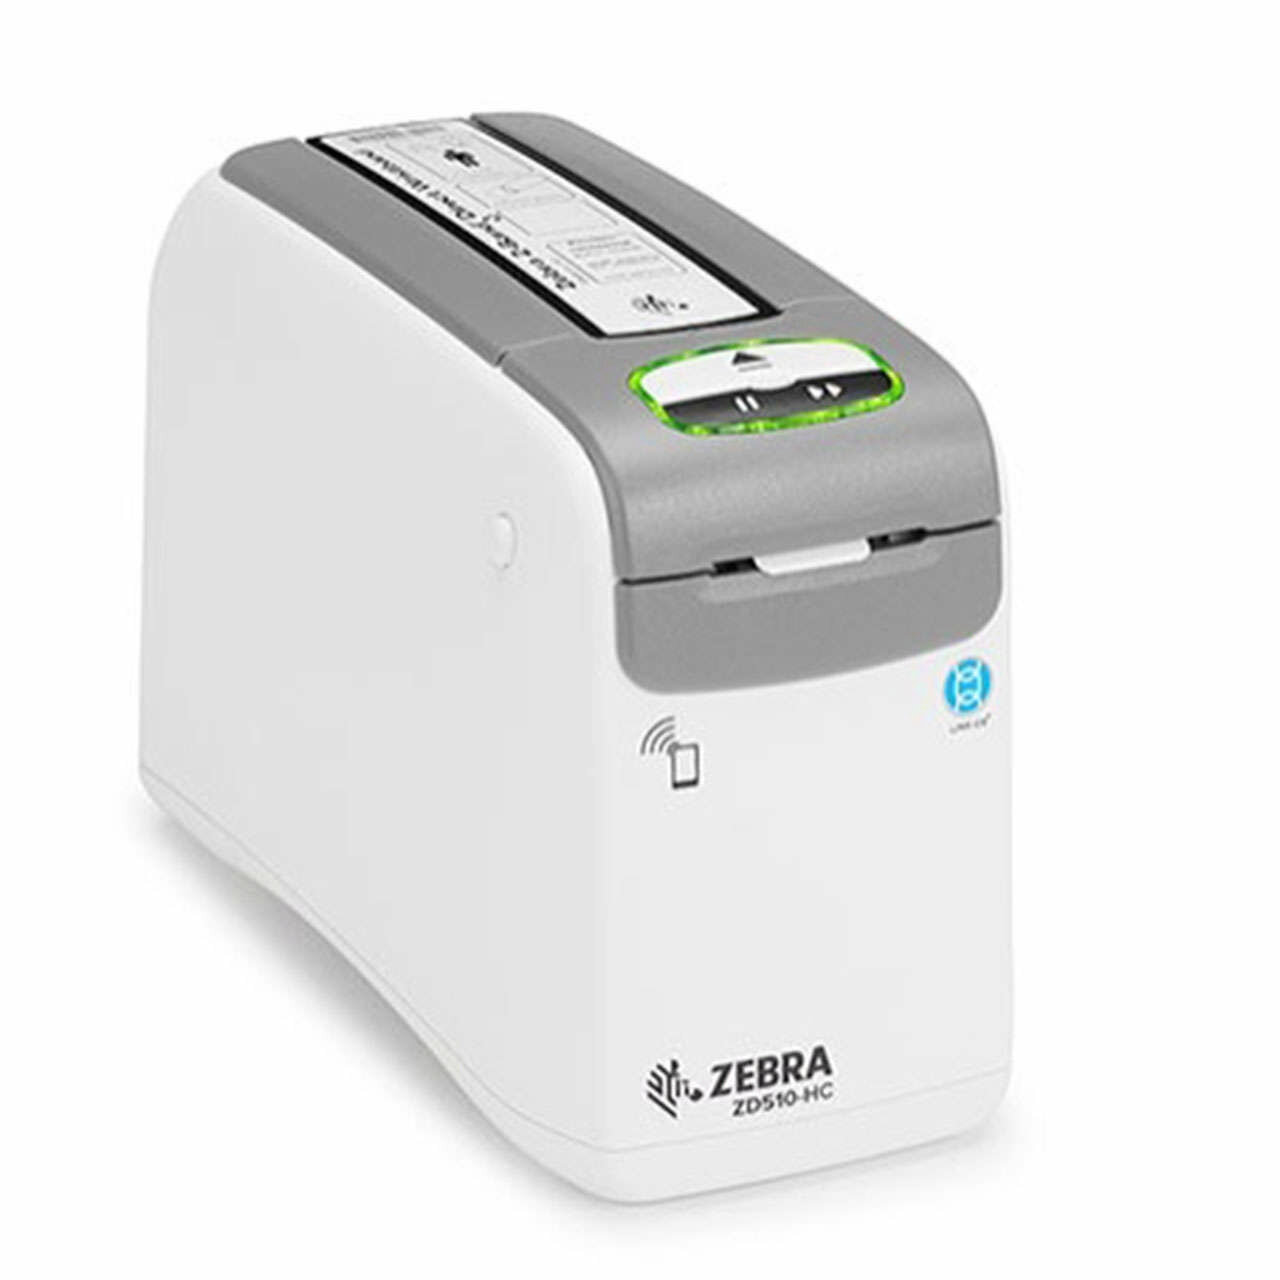 Принтер для печати браслетов Zebra ZD510-HC П ZD51013-D0EE00FZ , 300 dpi, USB, USB Host, Ethernet